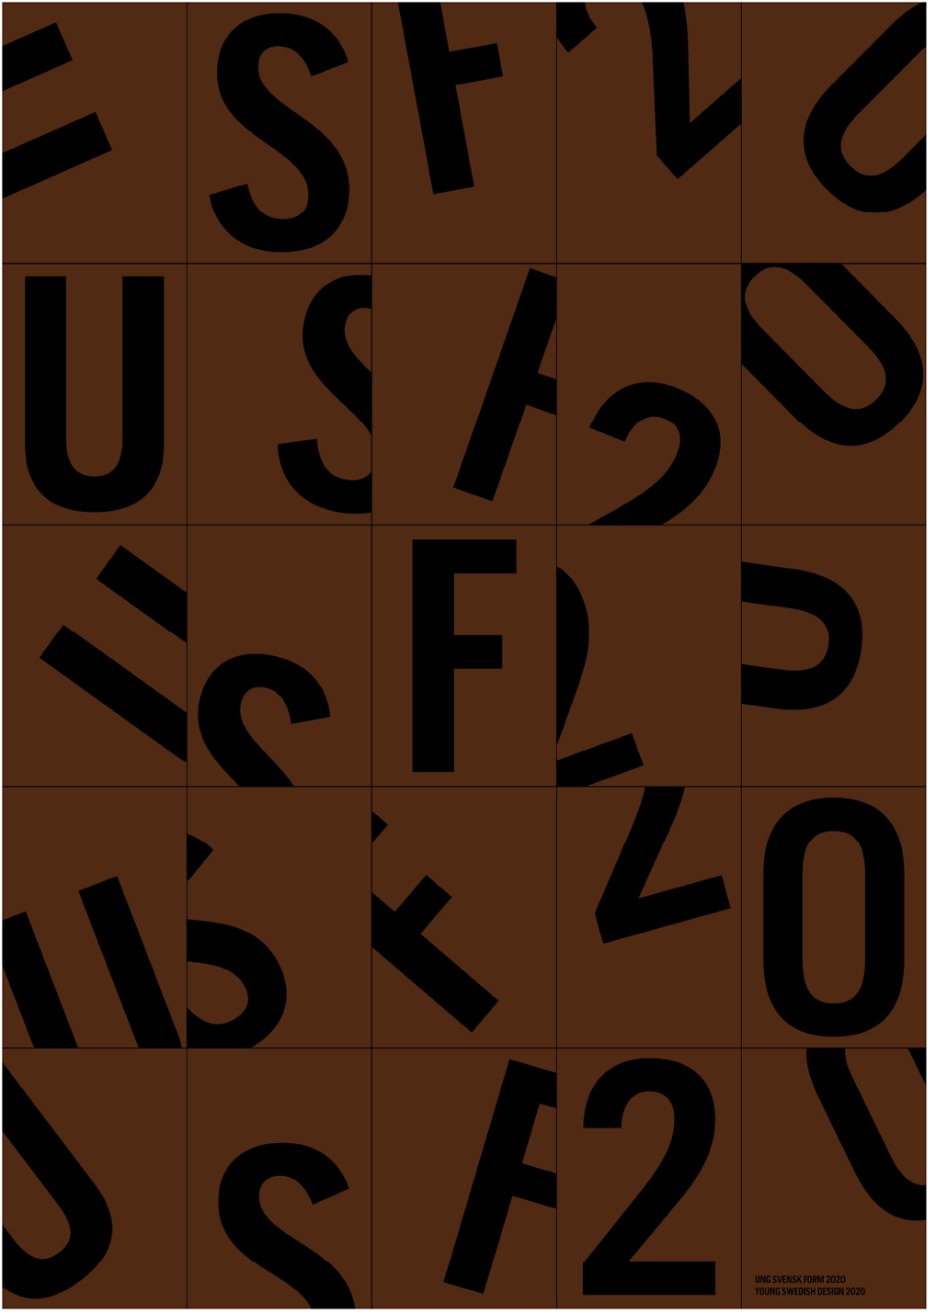 Svarta bokstäver och siffror tryckta på bruna rektanglar som ligger huller om buller.